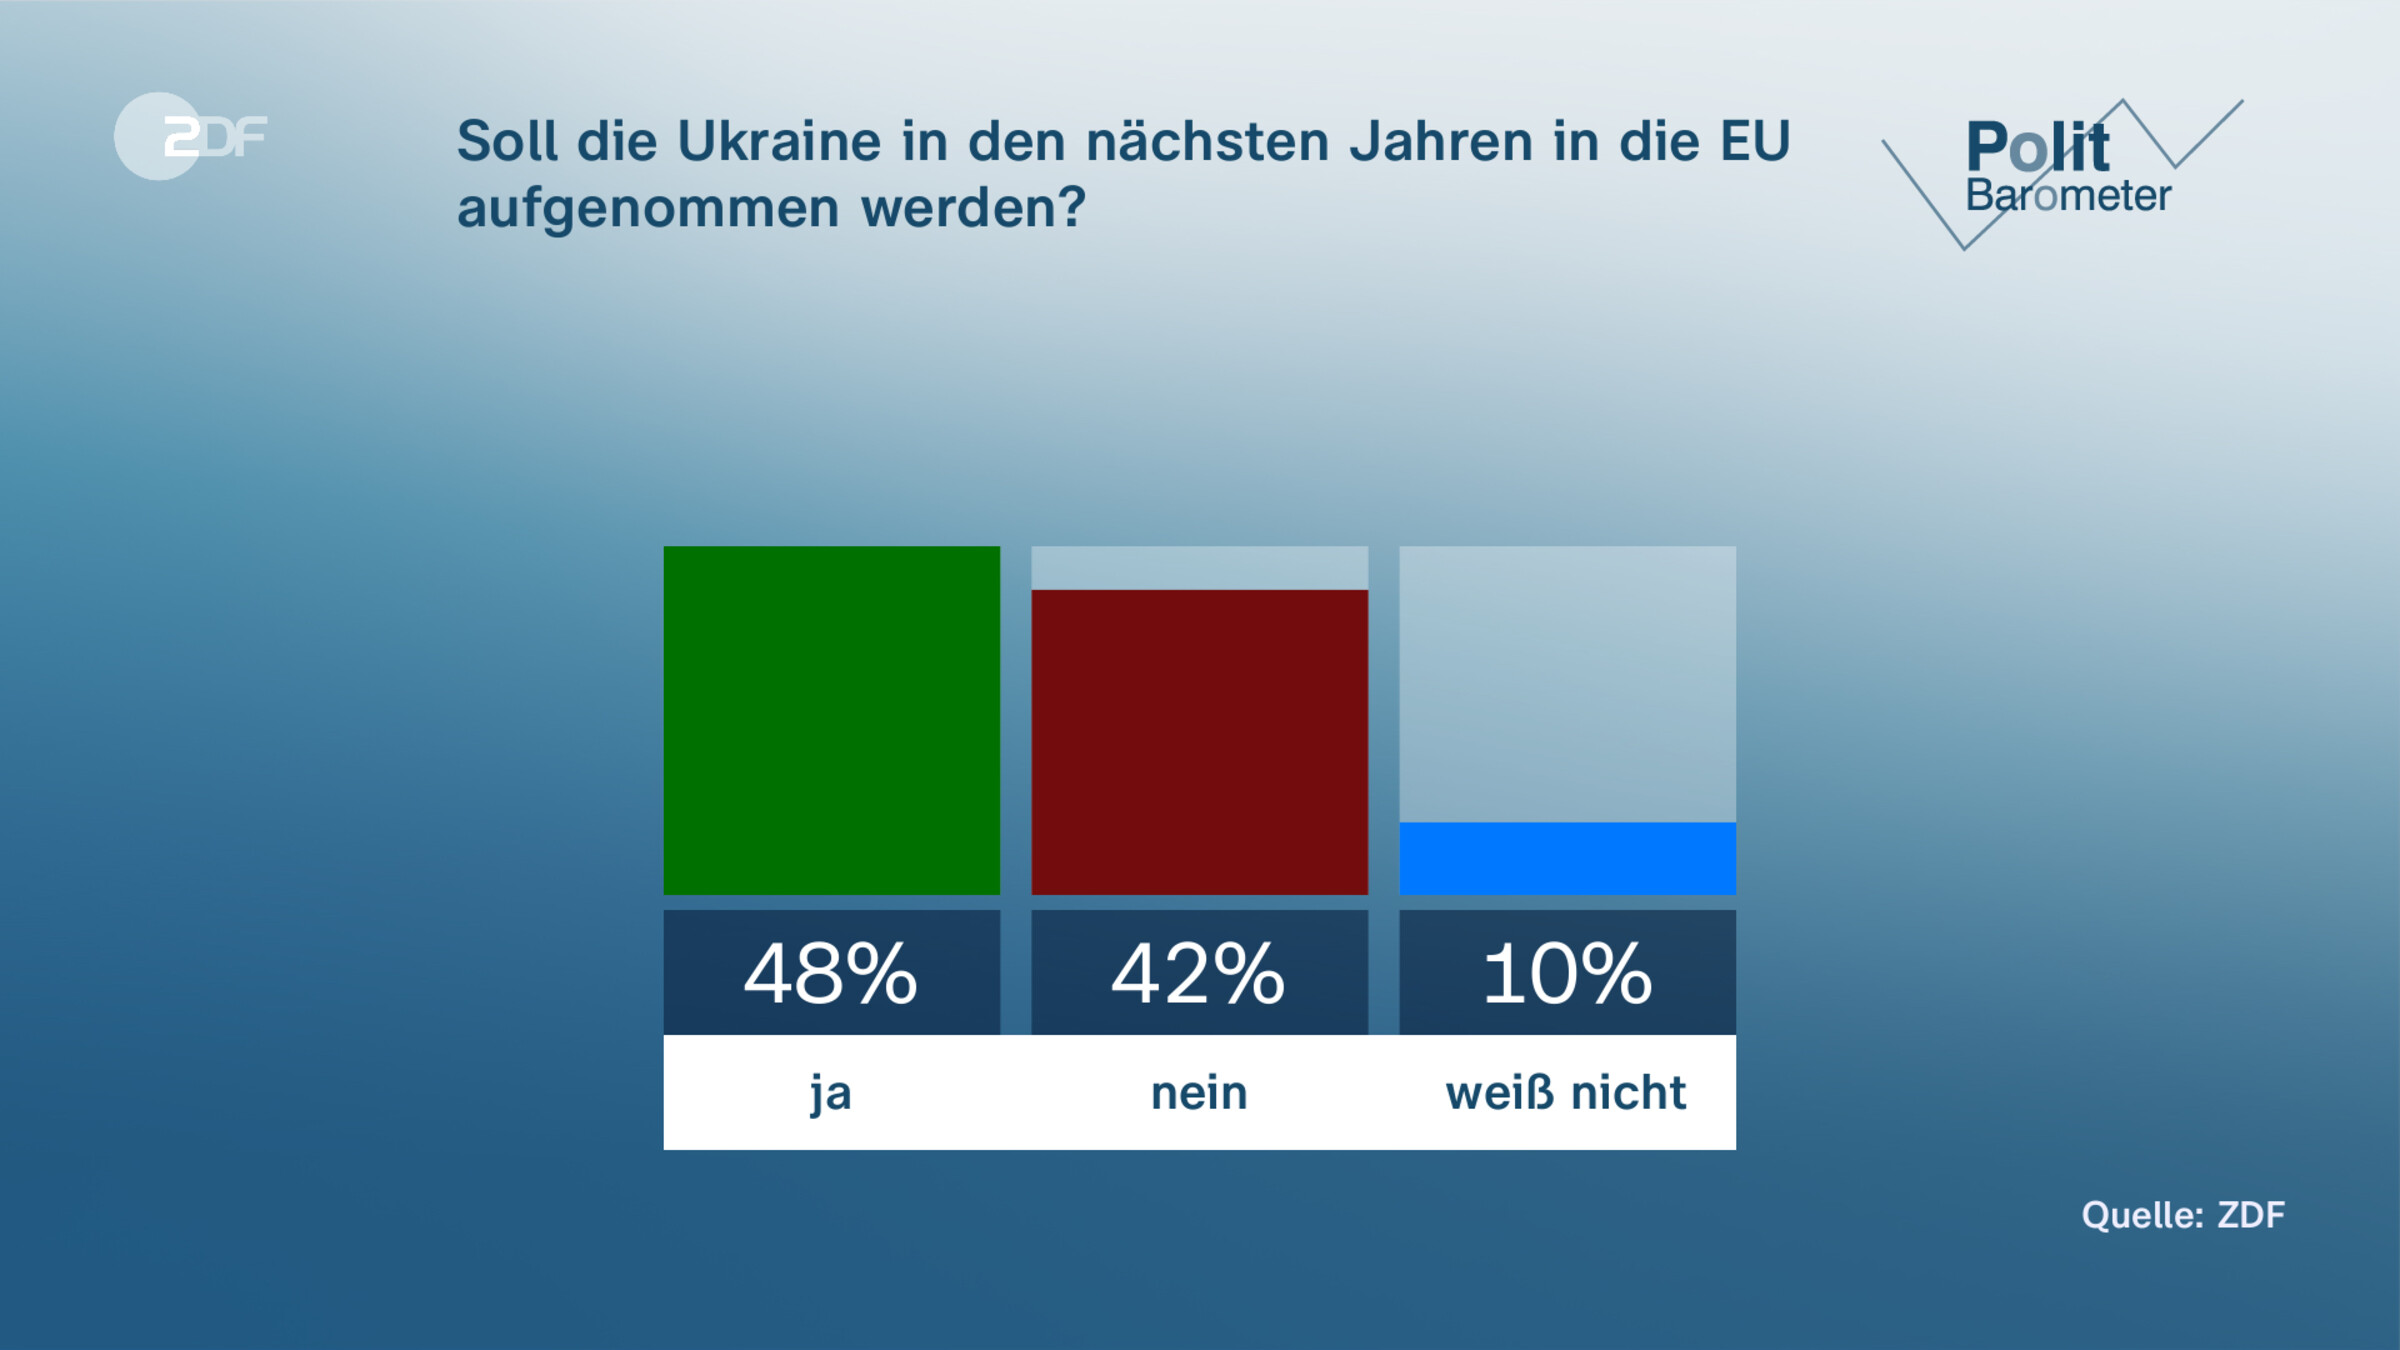 Soll die Ukraine in den nächsten Jahren in die EU aufgenommen werden?